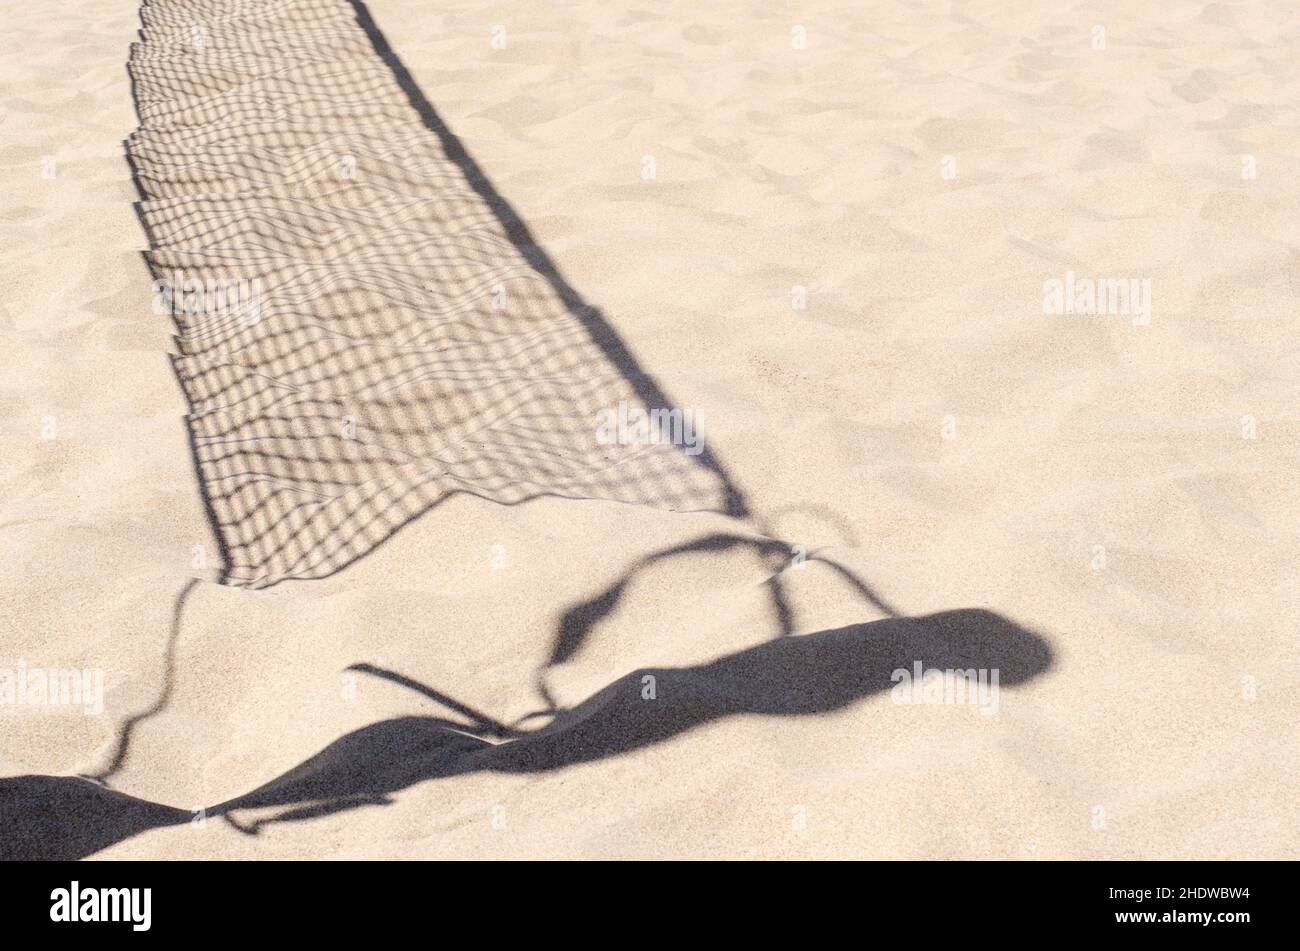 pallavolo in ombra sulla sabbia calda. concetto sportivo estivo di squadra. giornata di sole sulla spiaggia Foto Stock